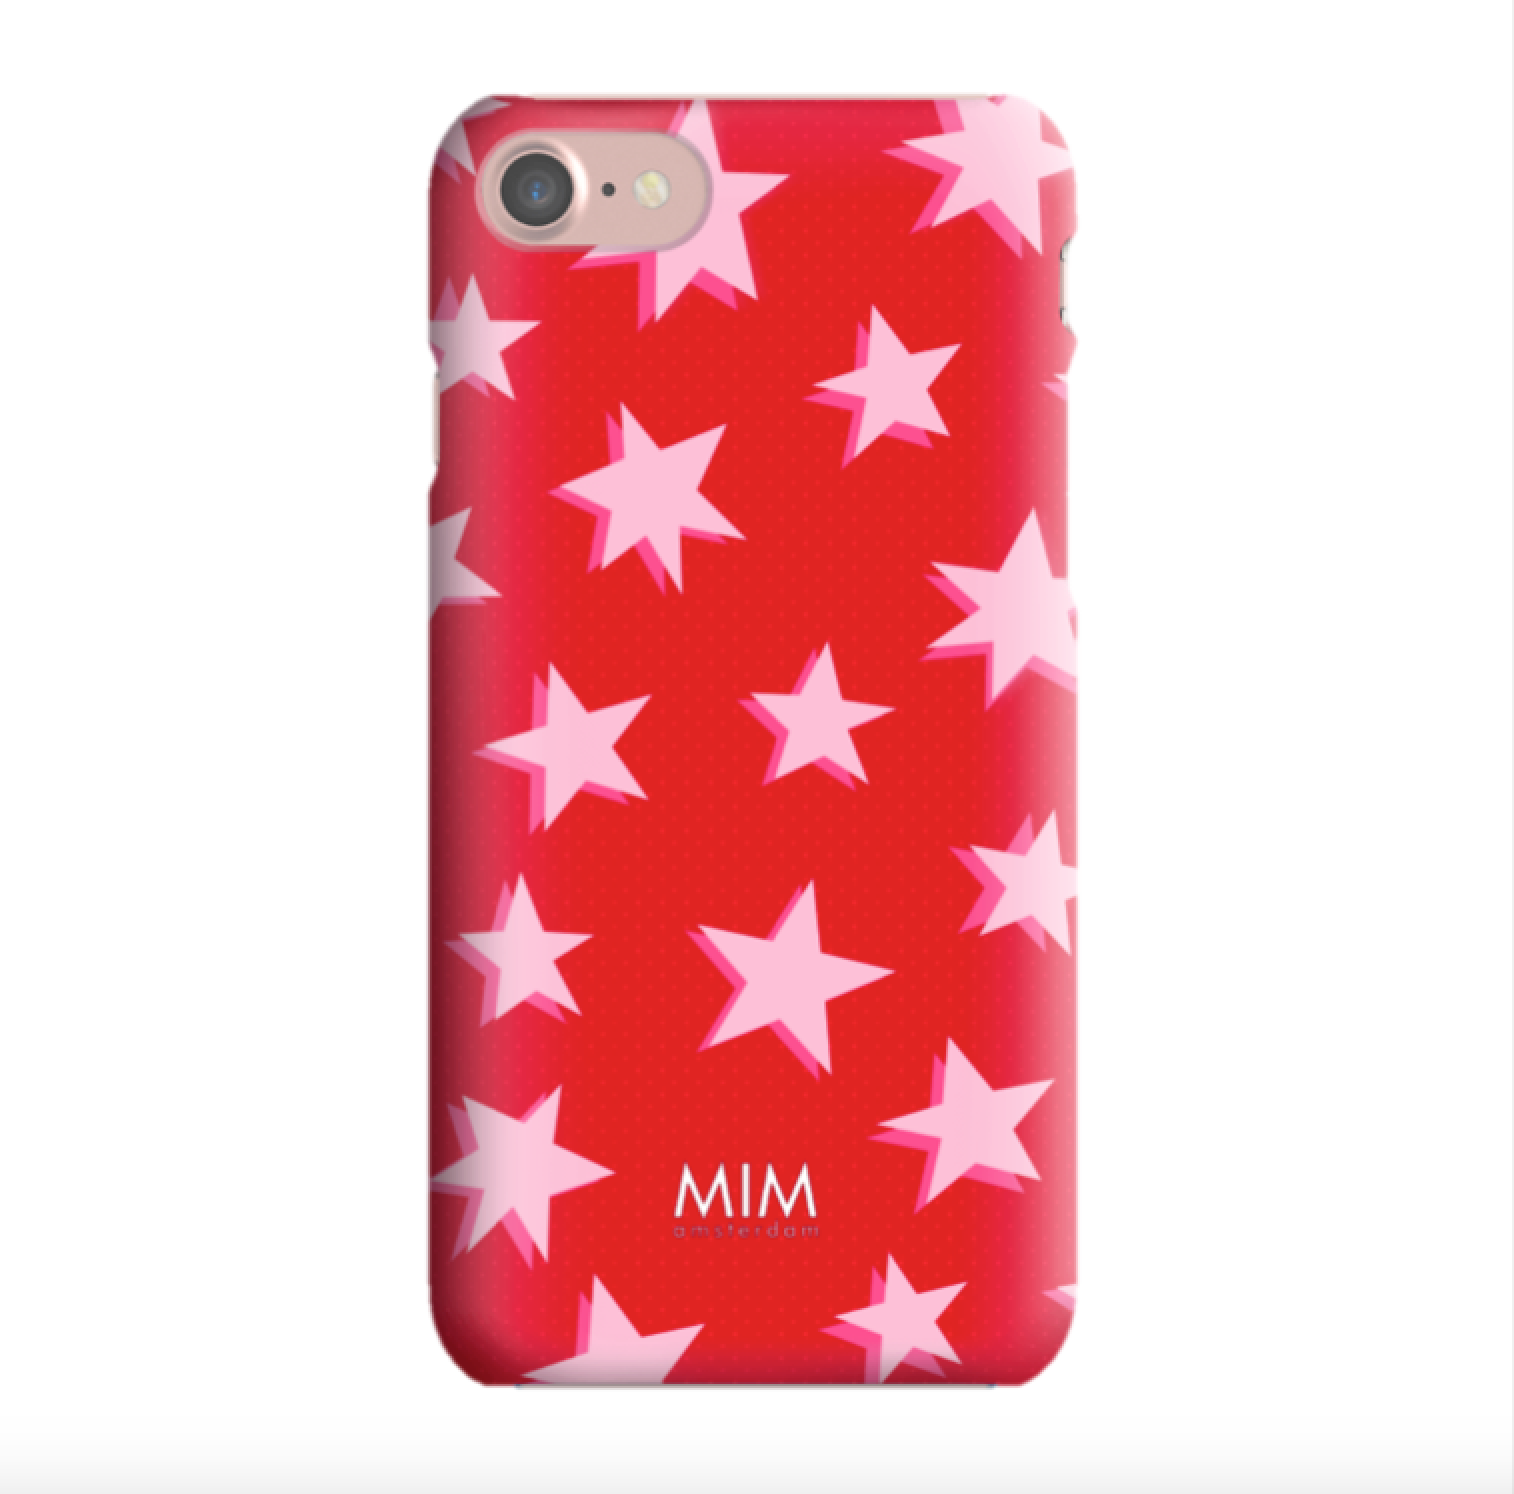 Rubriek Flash mixer Rood hardcase iPhone hoesje met roze sterren | MIM Amsterdam - MIM Amsterdam